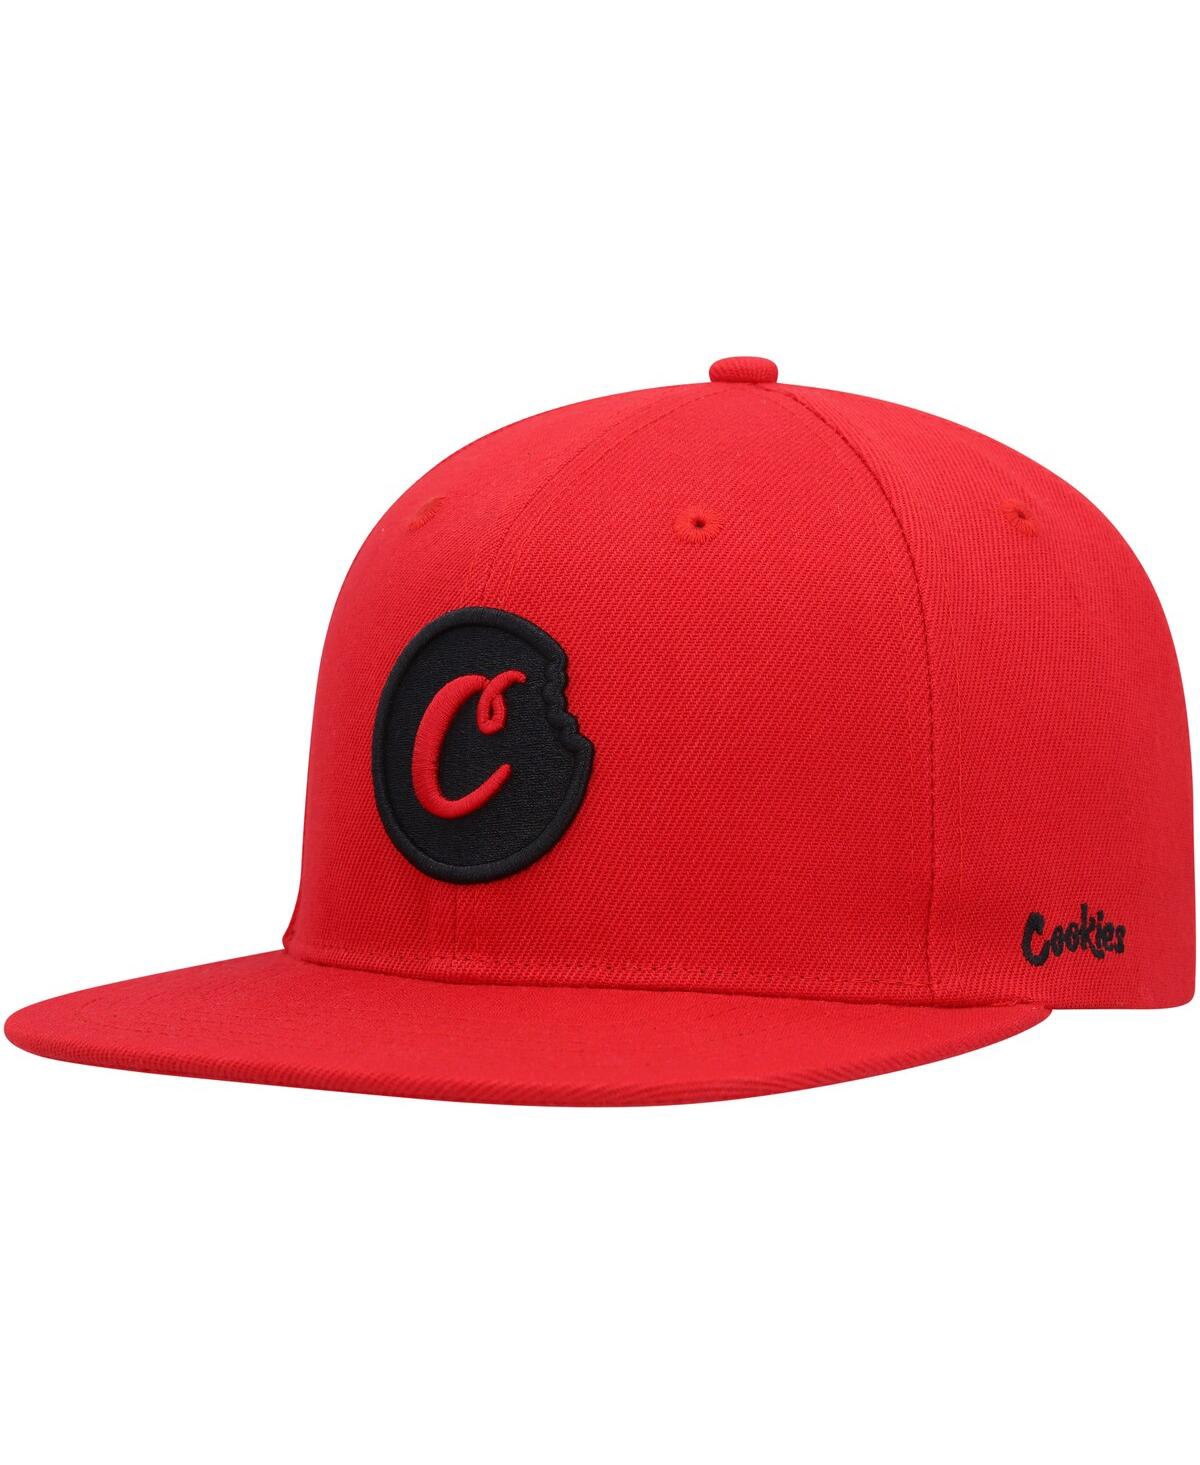 Cookies Men's  Red C-bite Snapback Hat